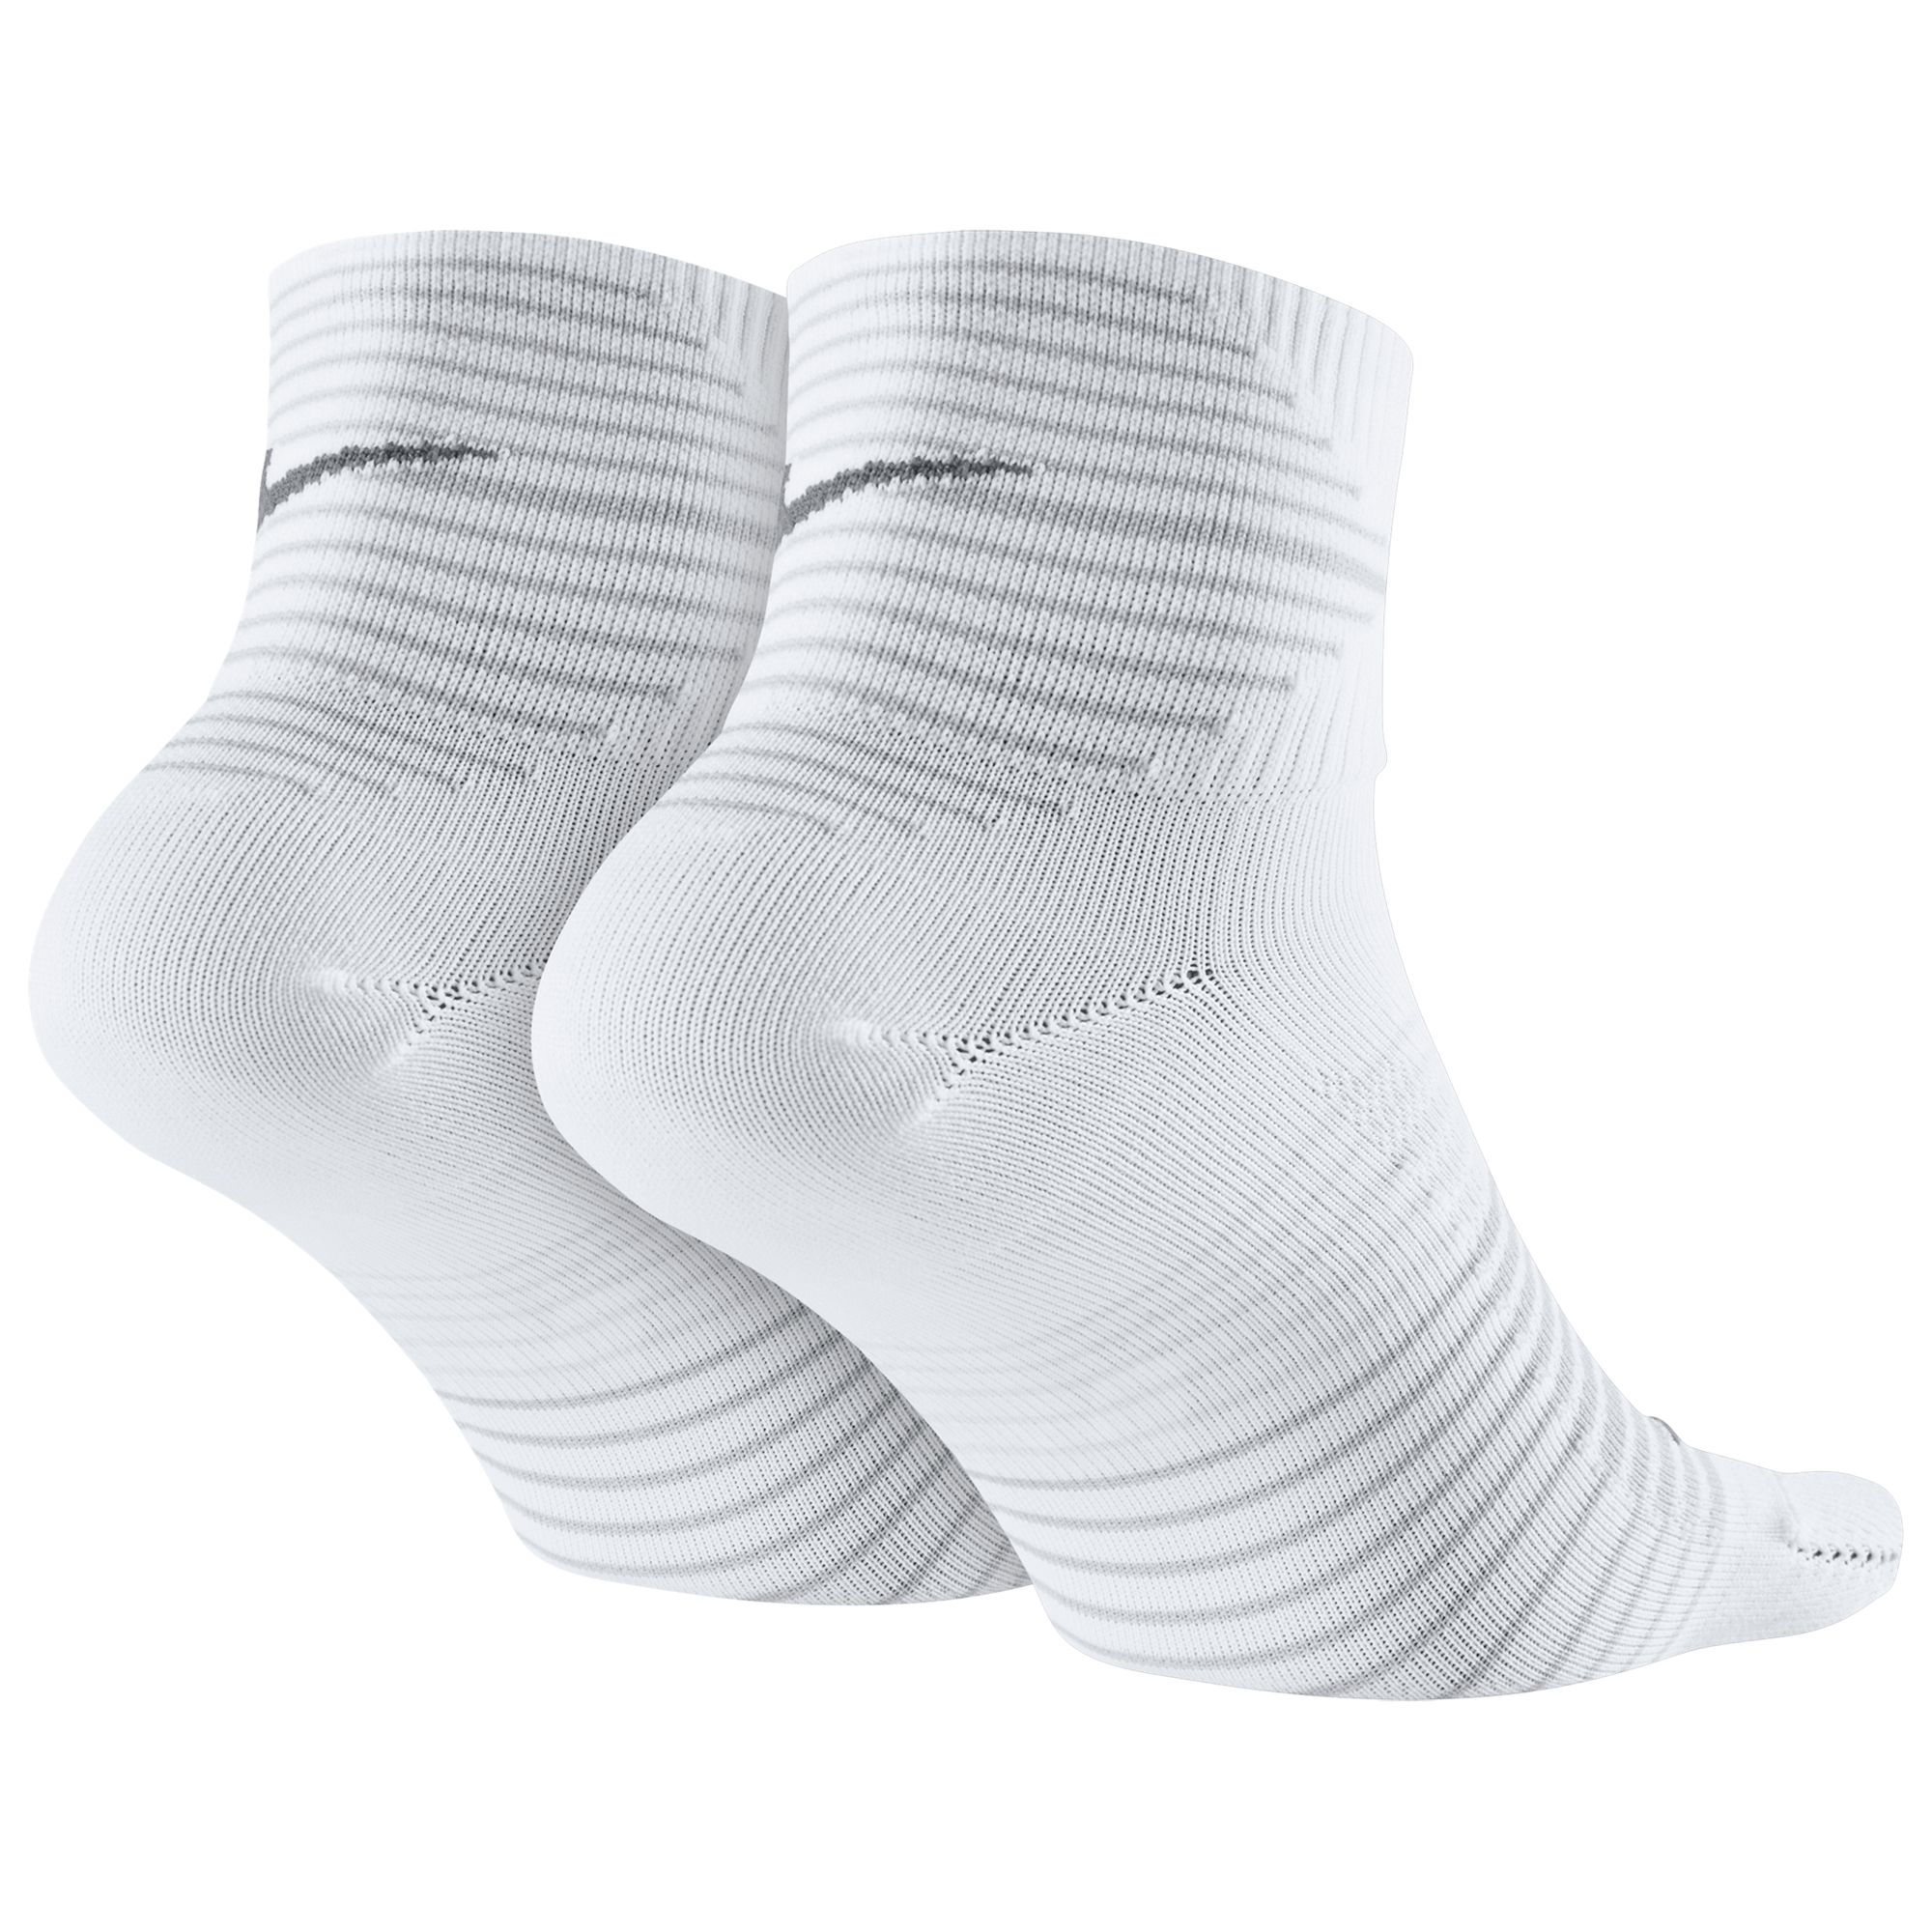 Nike Performance Lightweight Quarter Socks, Pack of 2,